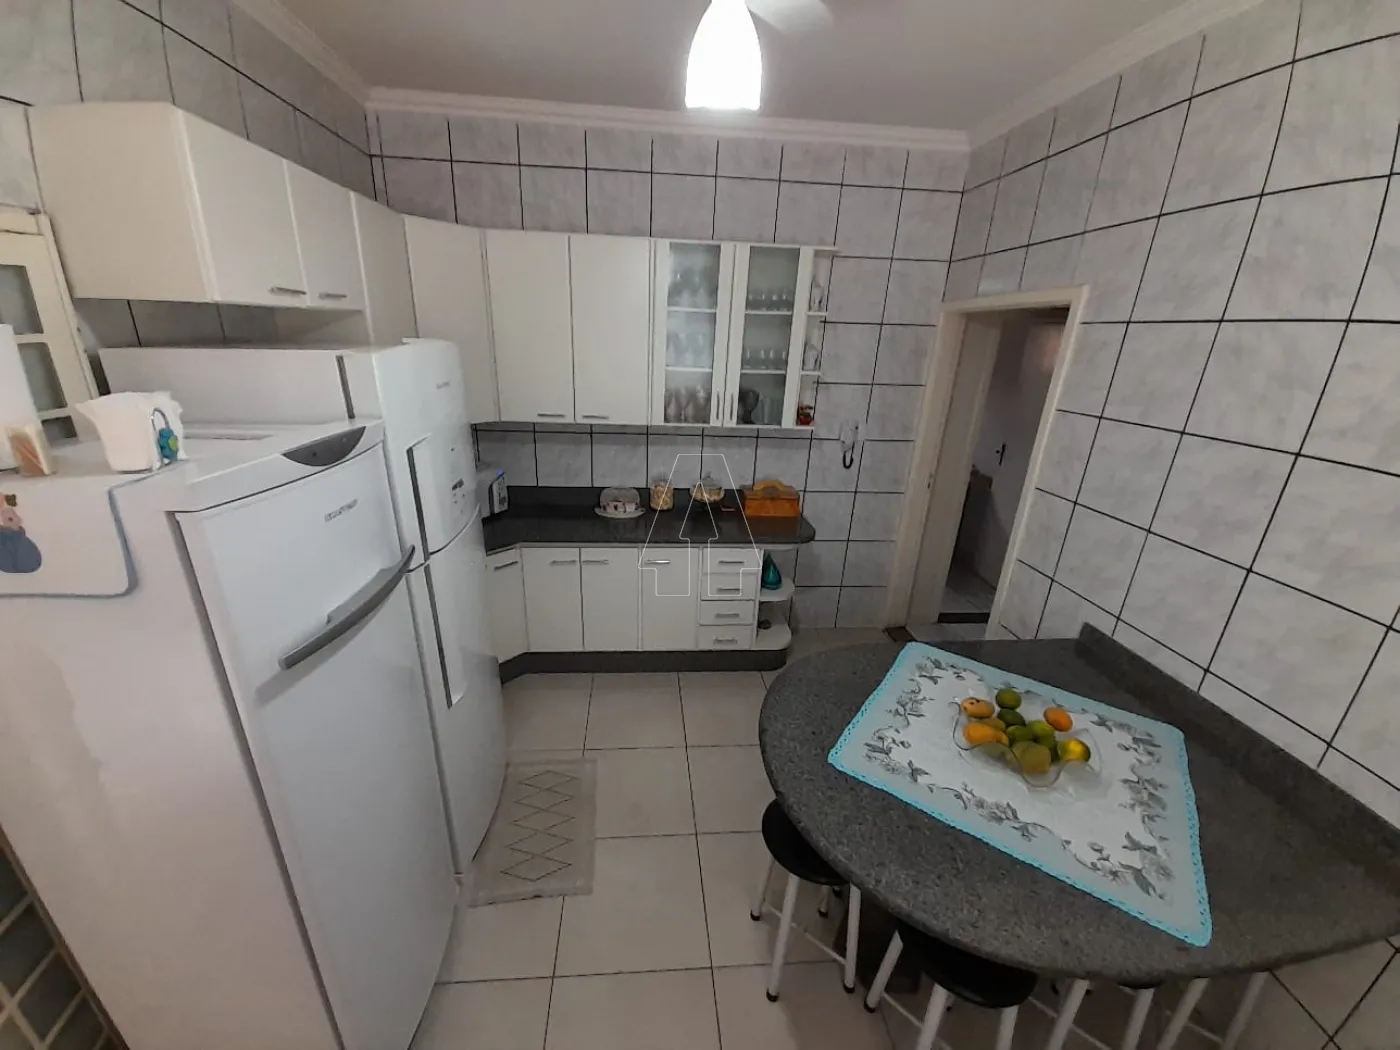 Comprar Casa / Residencial em Araçatuba R$ 600.000,00 - Foto 15